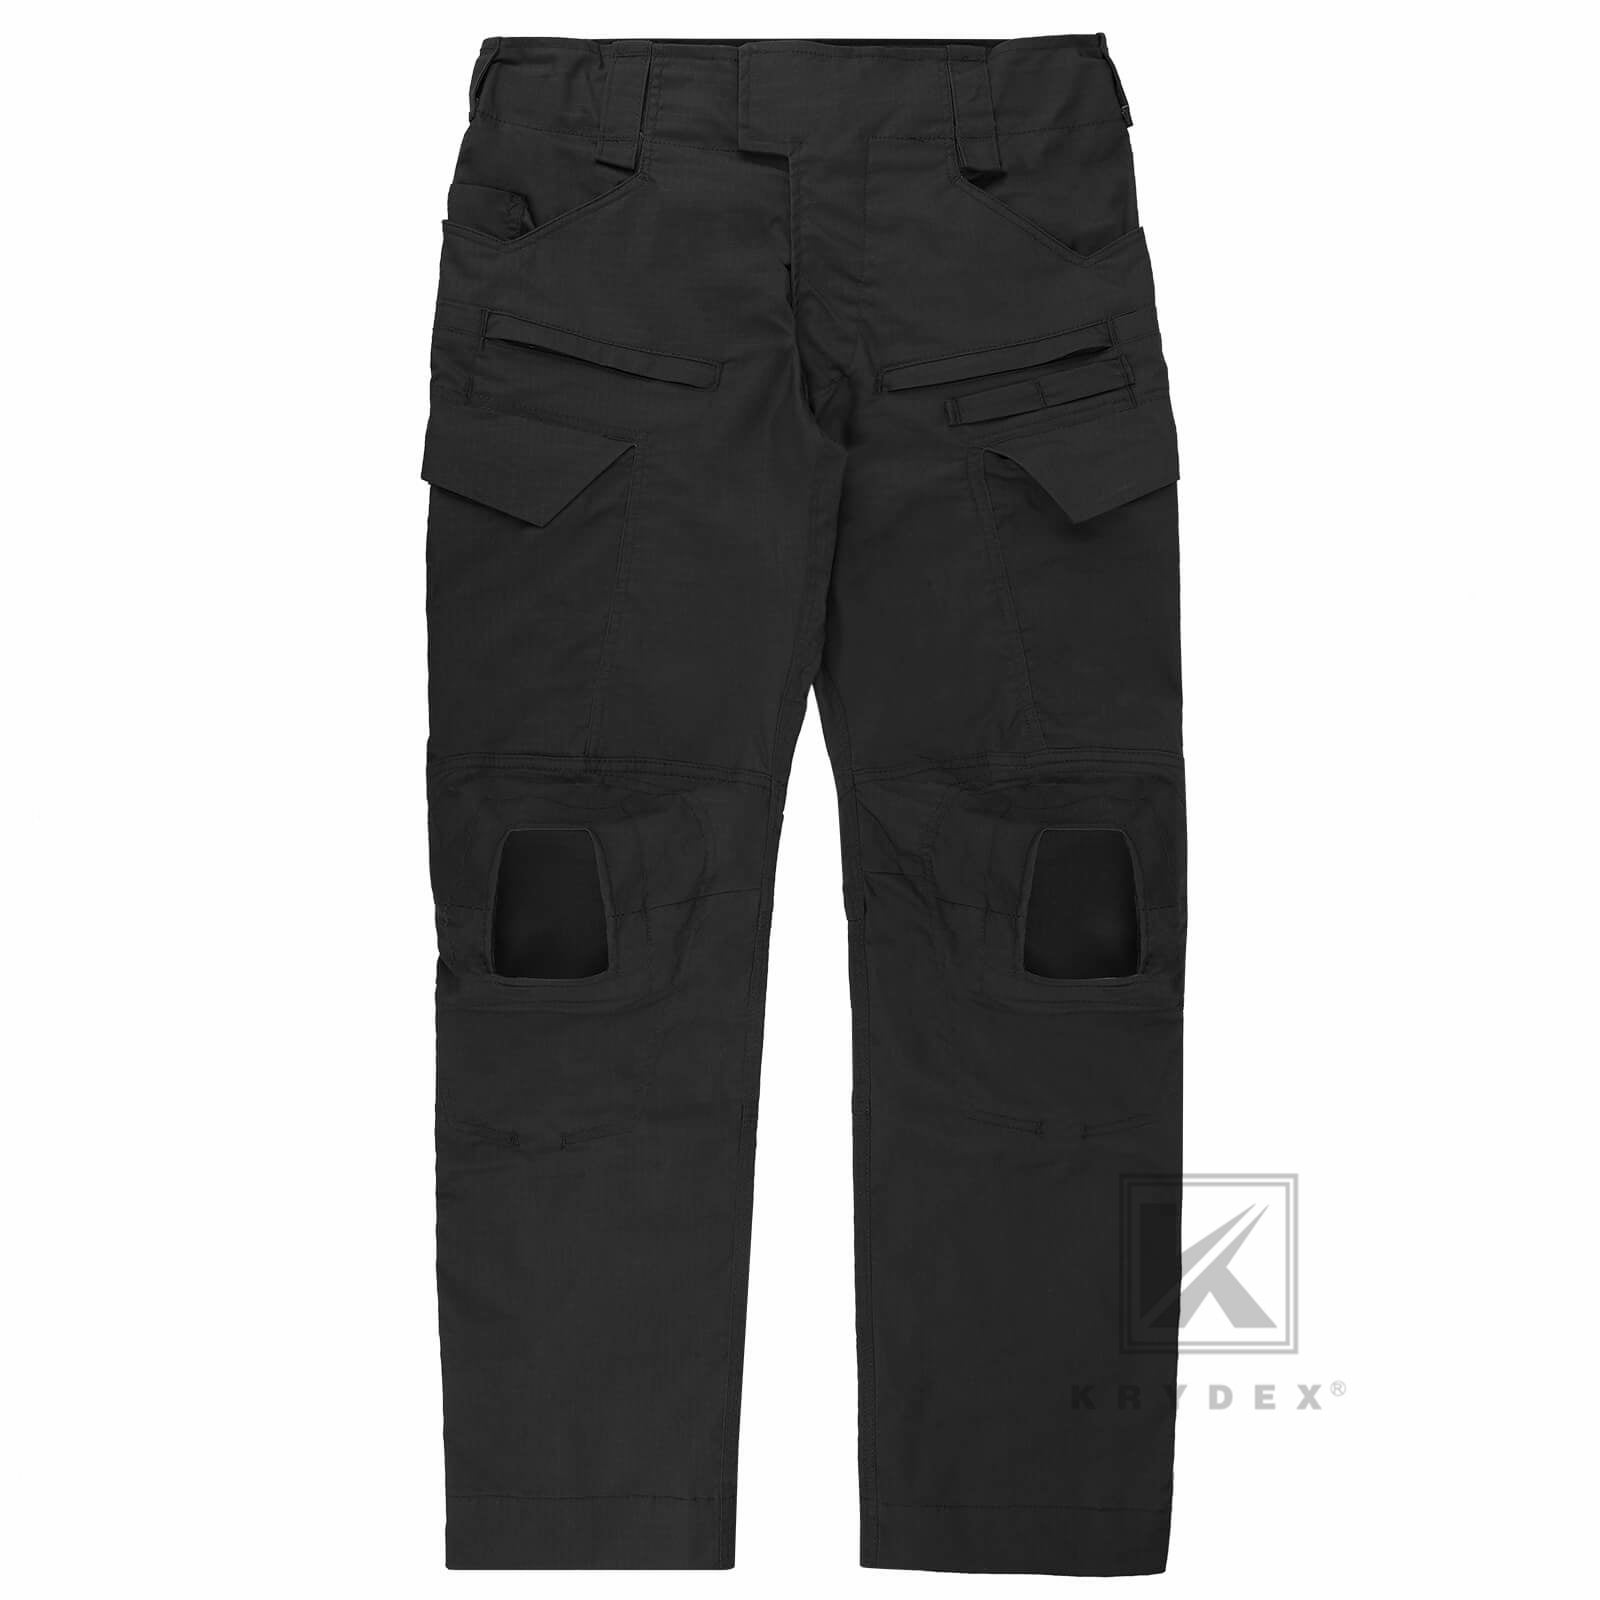 Krydex Tactical G4 Men's Combat Pants with Knee Pads Uniform Trousers